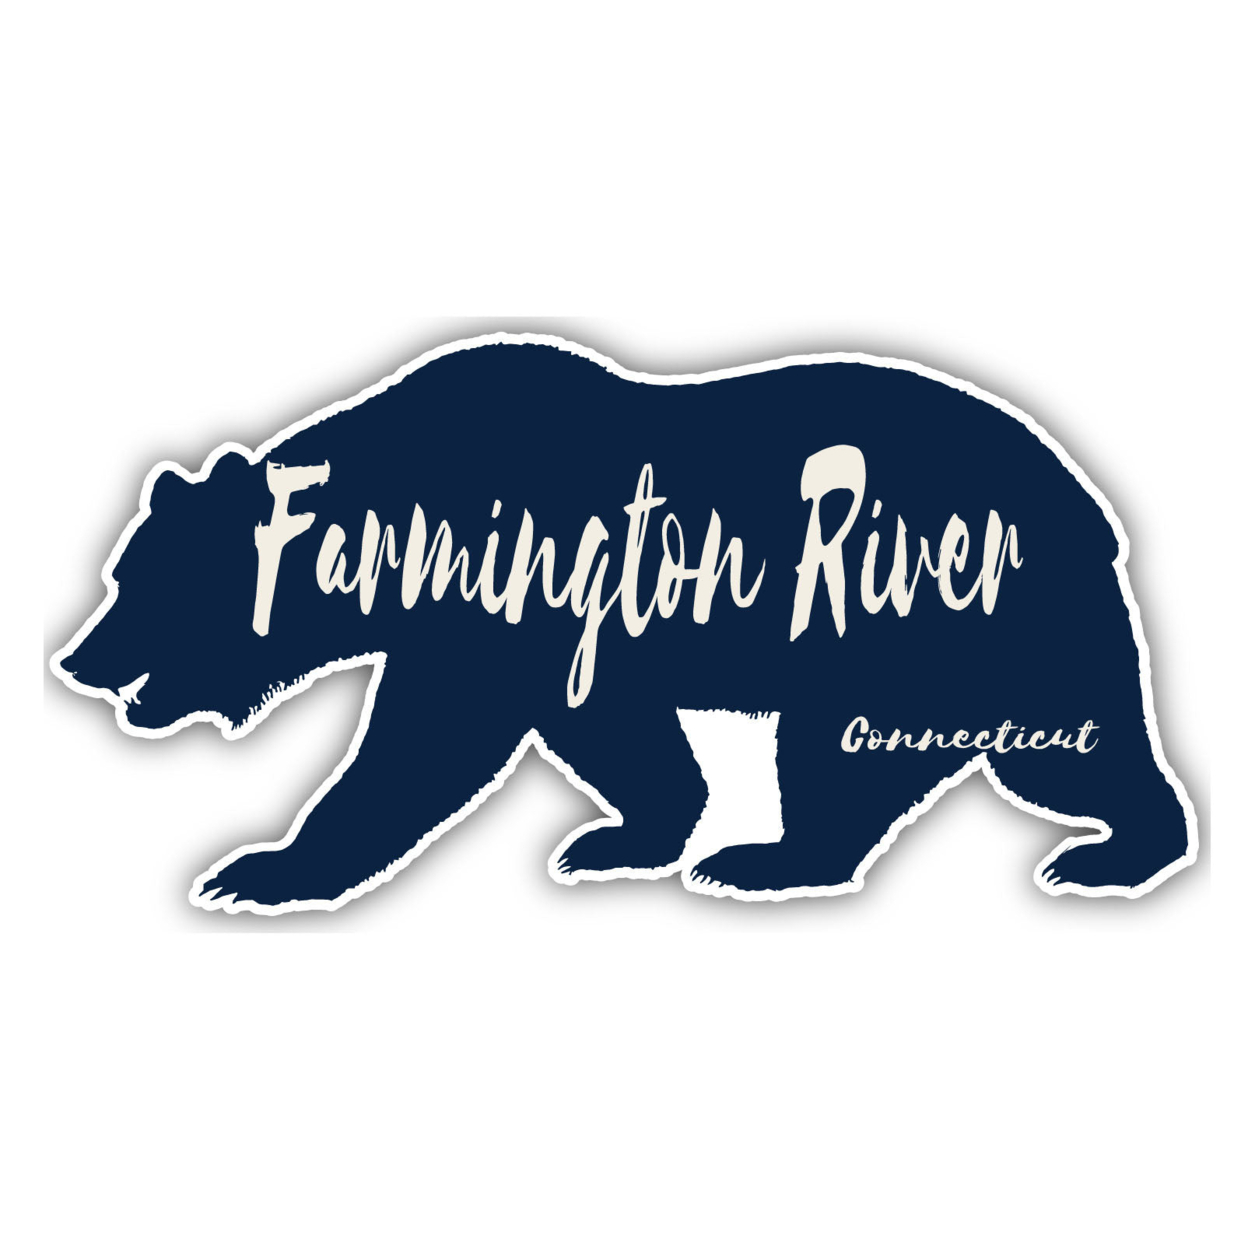 Farmington River Connecticut Souvenir Decorative Stickers (Choose Theme And Size) - Single Unit, 6-Inch, Bear